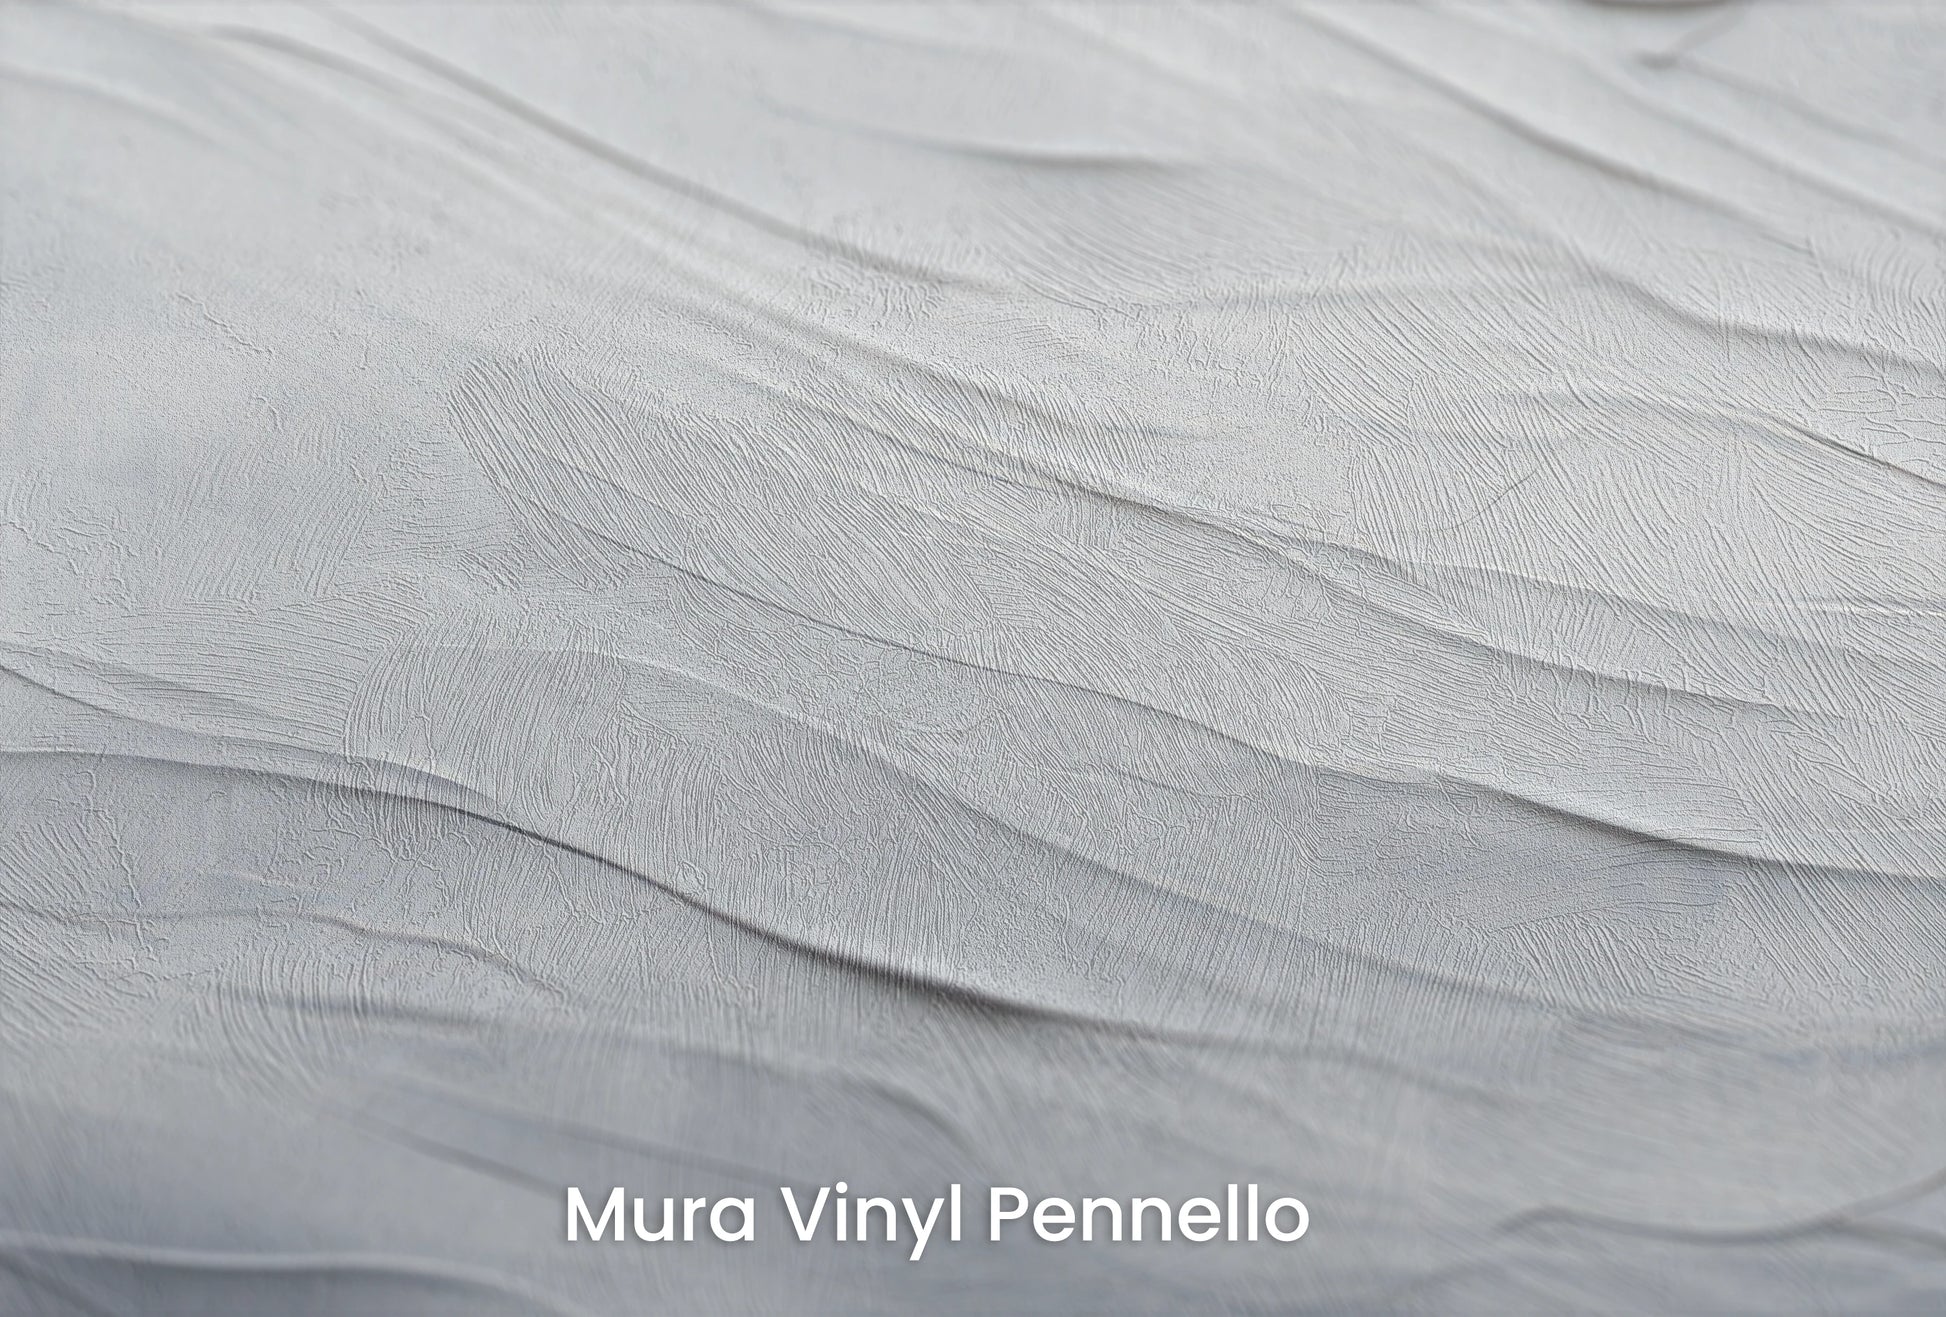 Zbliżenie na artystyczną fototapetę o nazwie Silent Whispers na podłożu Mura Vinyl Pennello - faktura pociągnięć pędzla malarskiego.